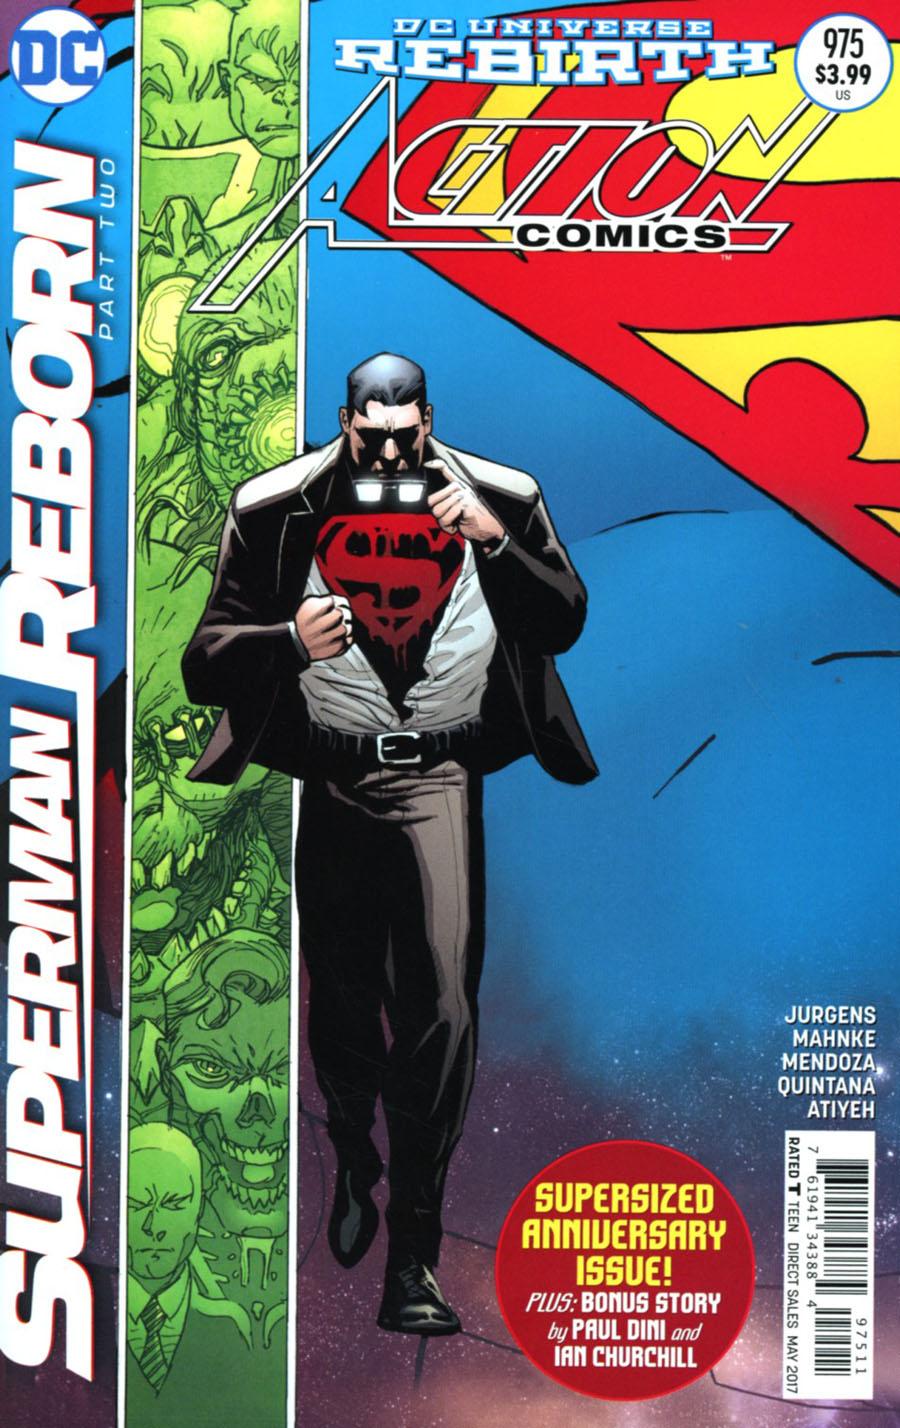 Action Comics Vol. 2 #975